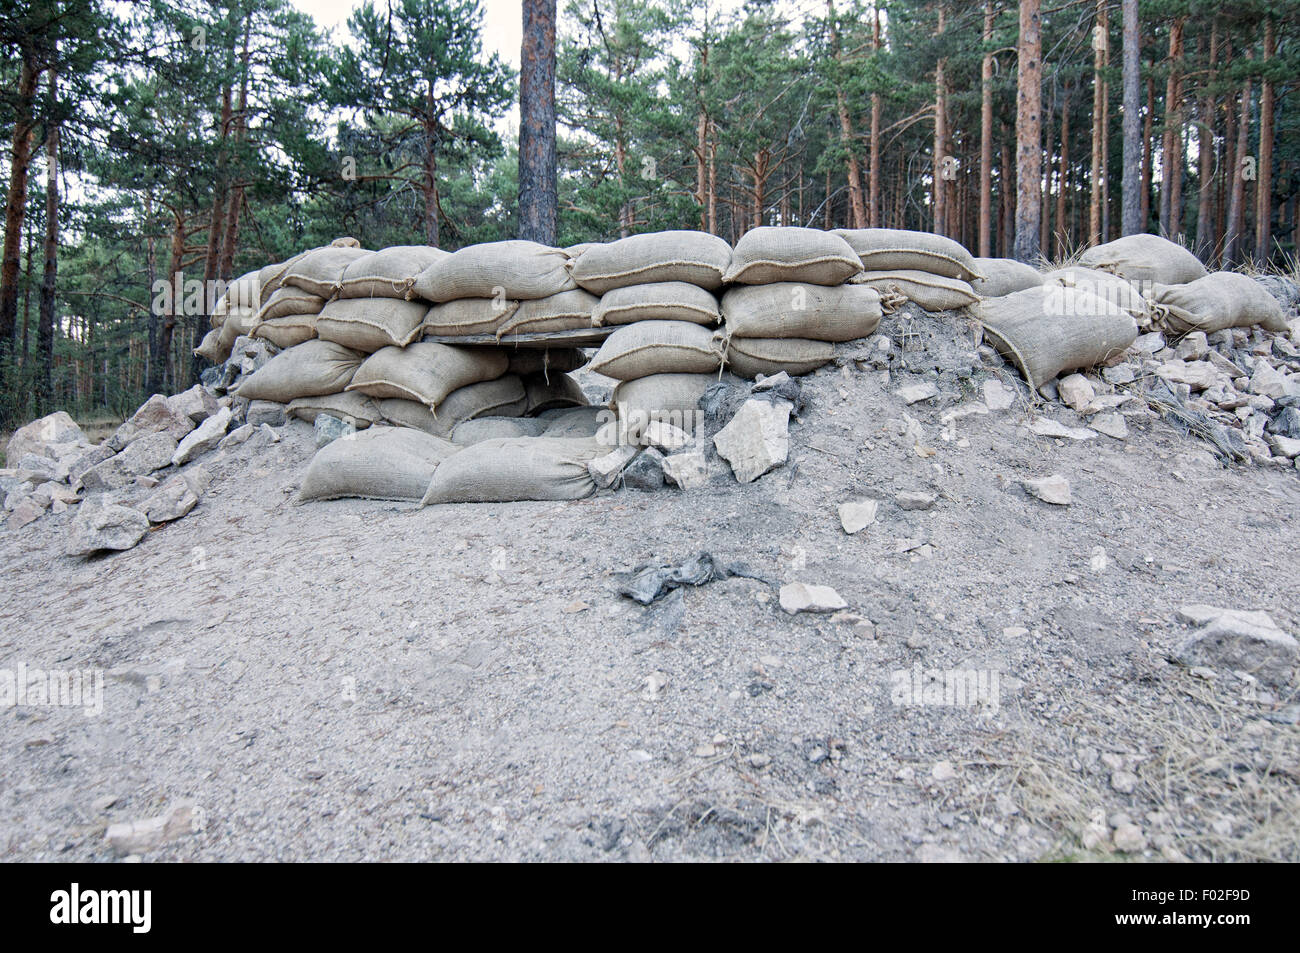 Trincee con accatastati sacchi di sabbia usata come difesa nella guerra civile spagnola a Valsain. Spagna. Foto Stock